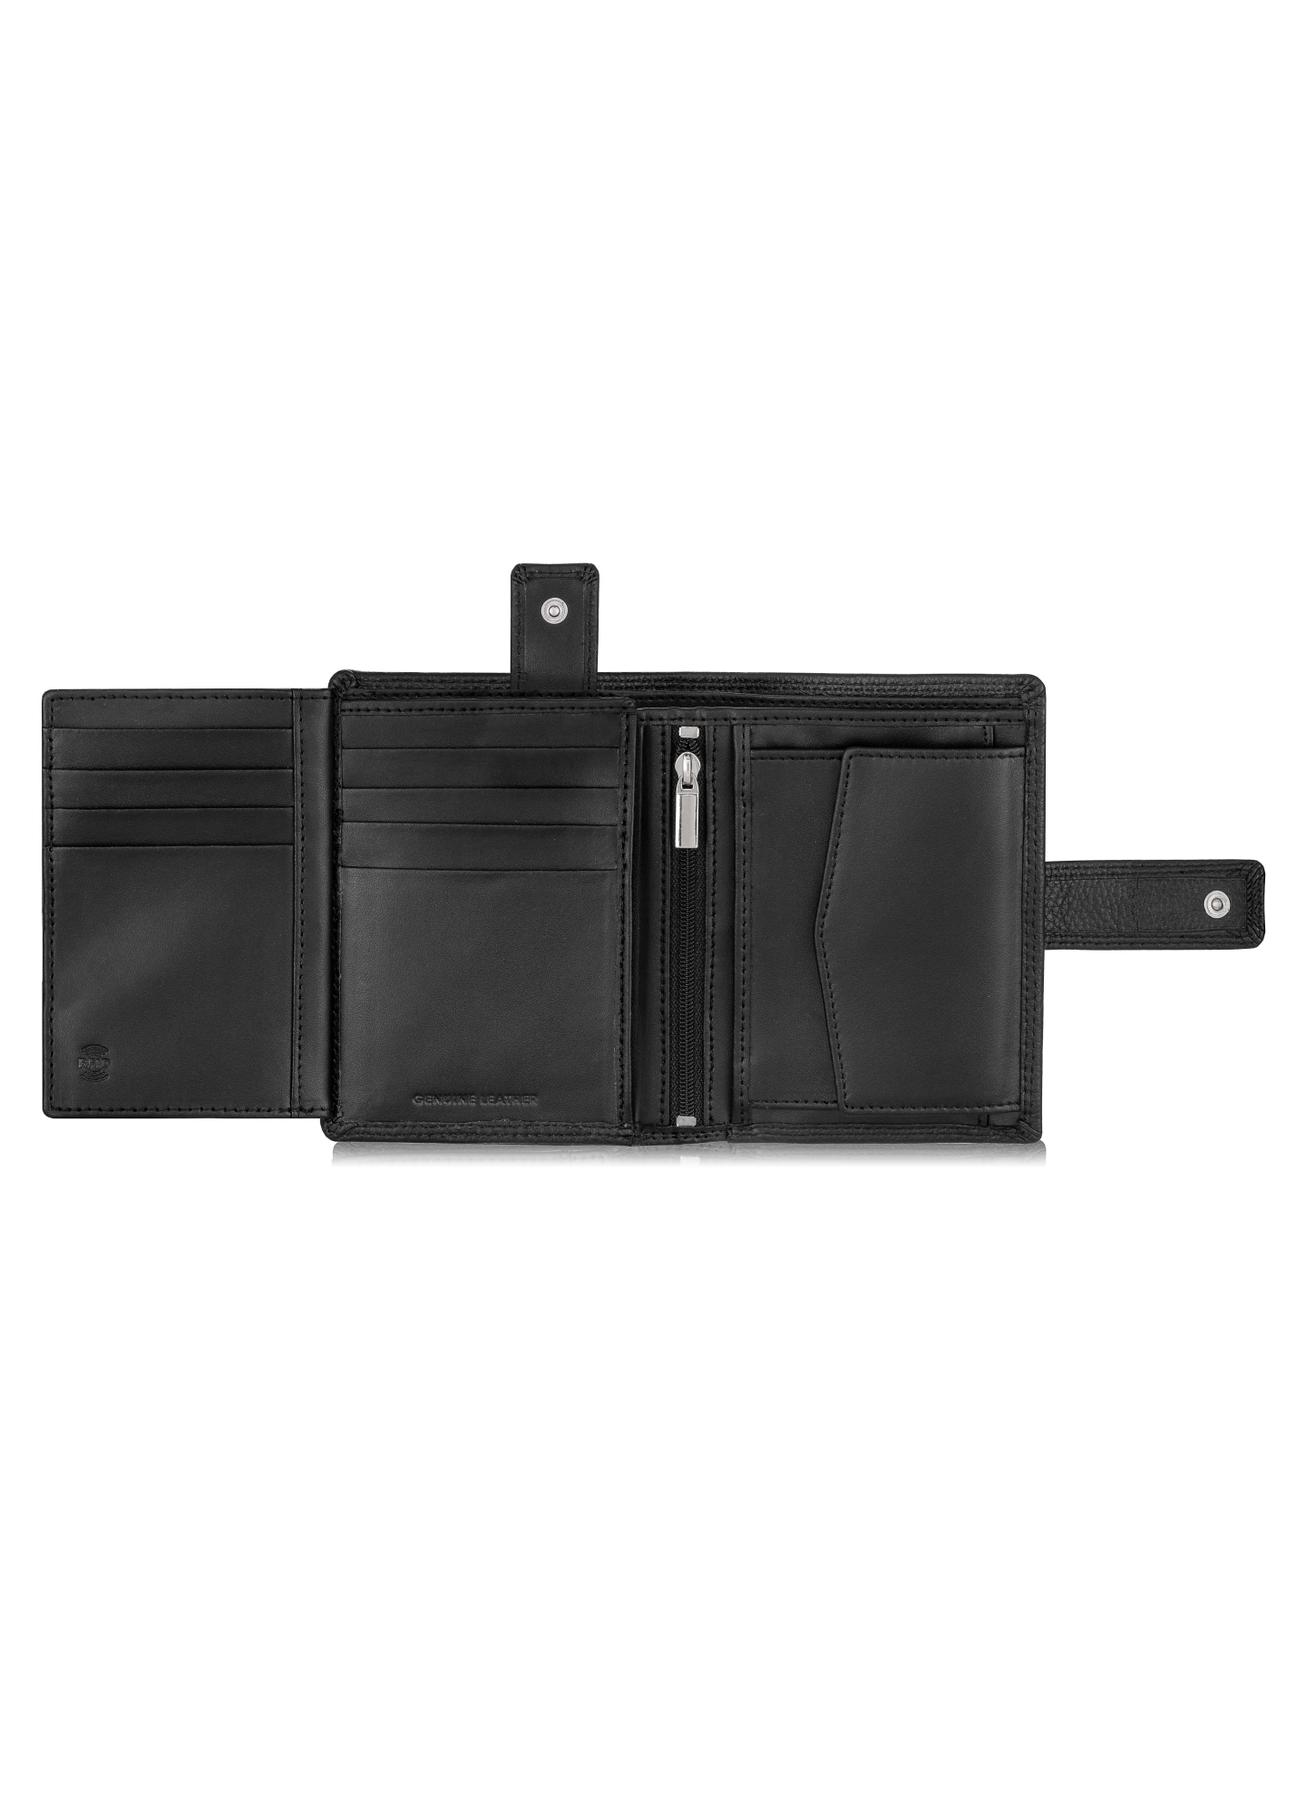 Skórzany portfel męski na zatrzask PORMS-0512-99(W23)